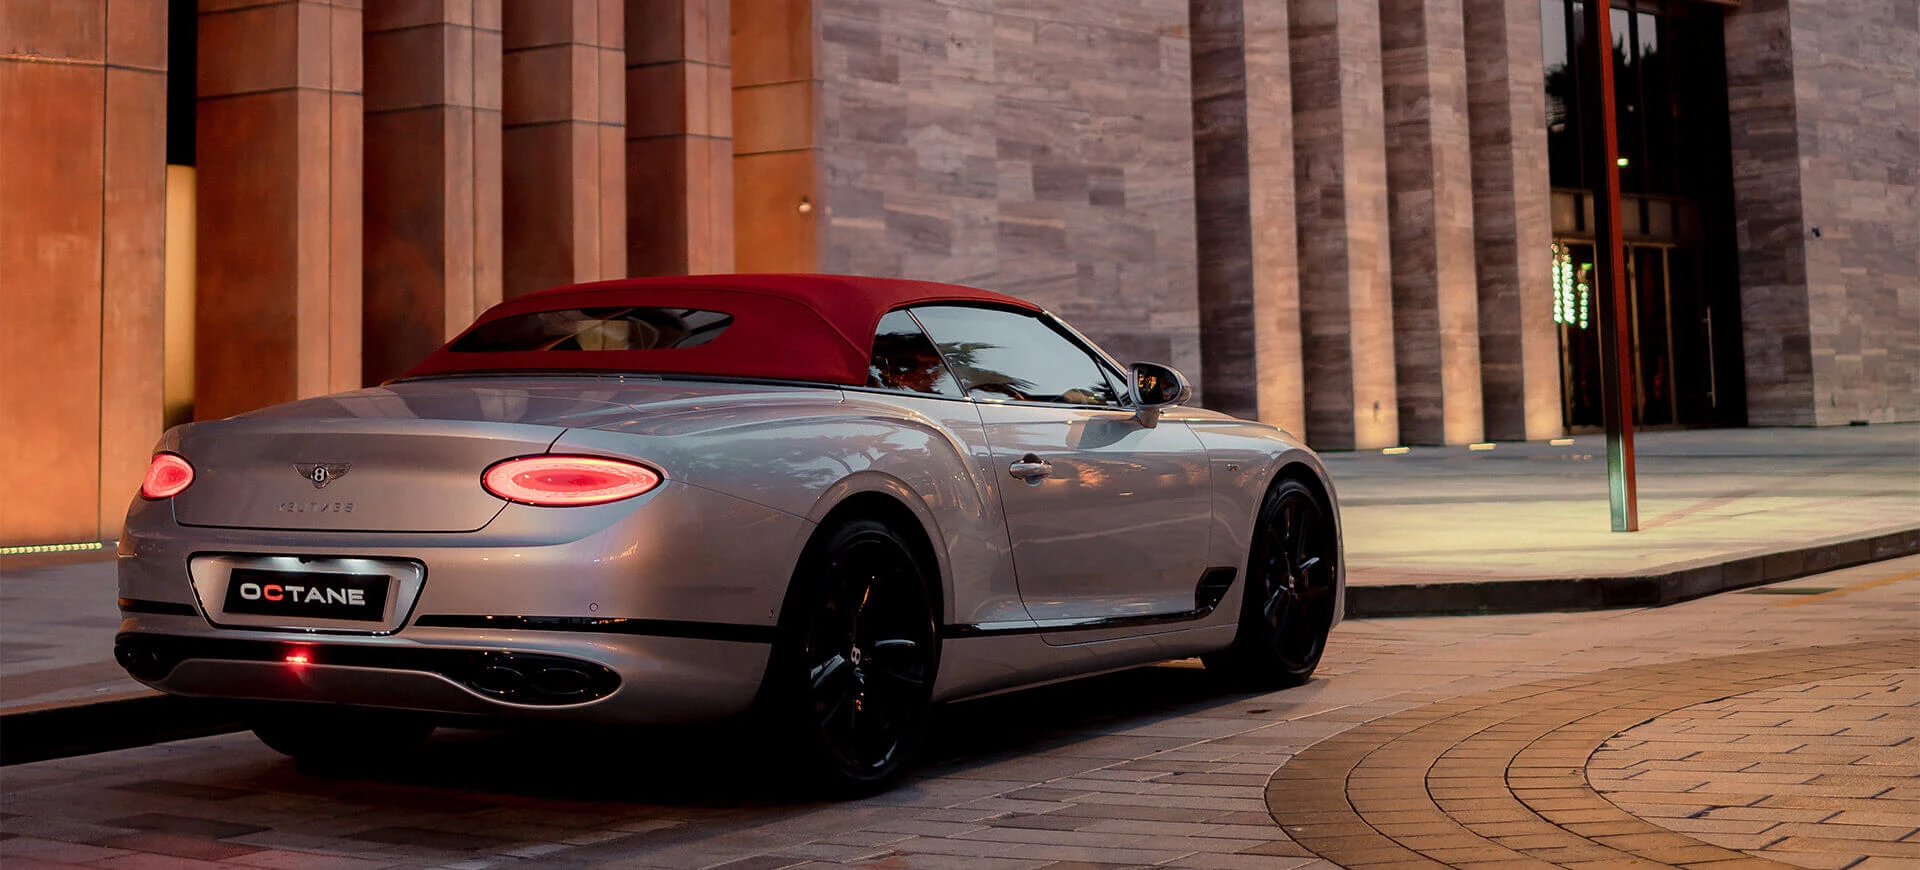 Lej Bentley i Dubai